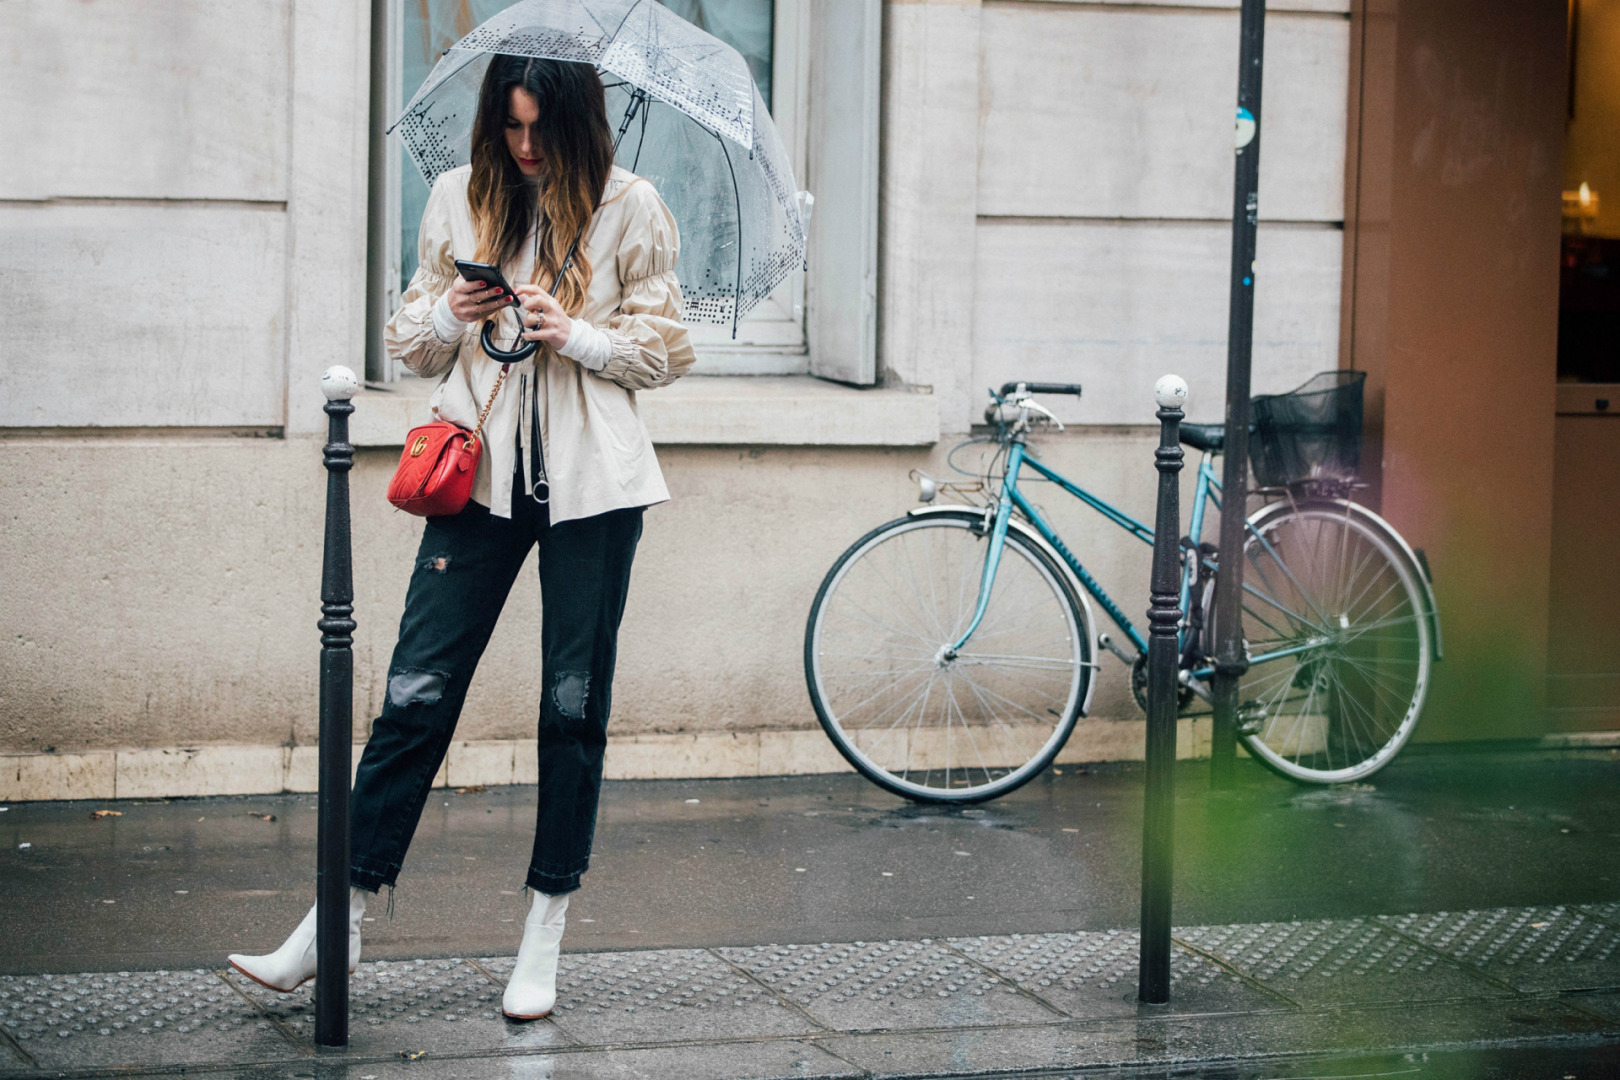 Sokak Stili: 2017-18 Sonbahar/Kış Paris Moda Haftası 1. ve 2. Gün